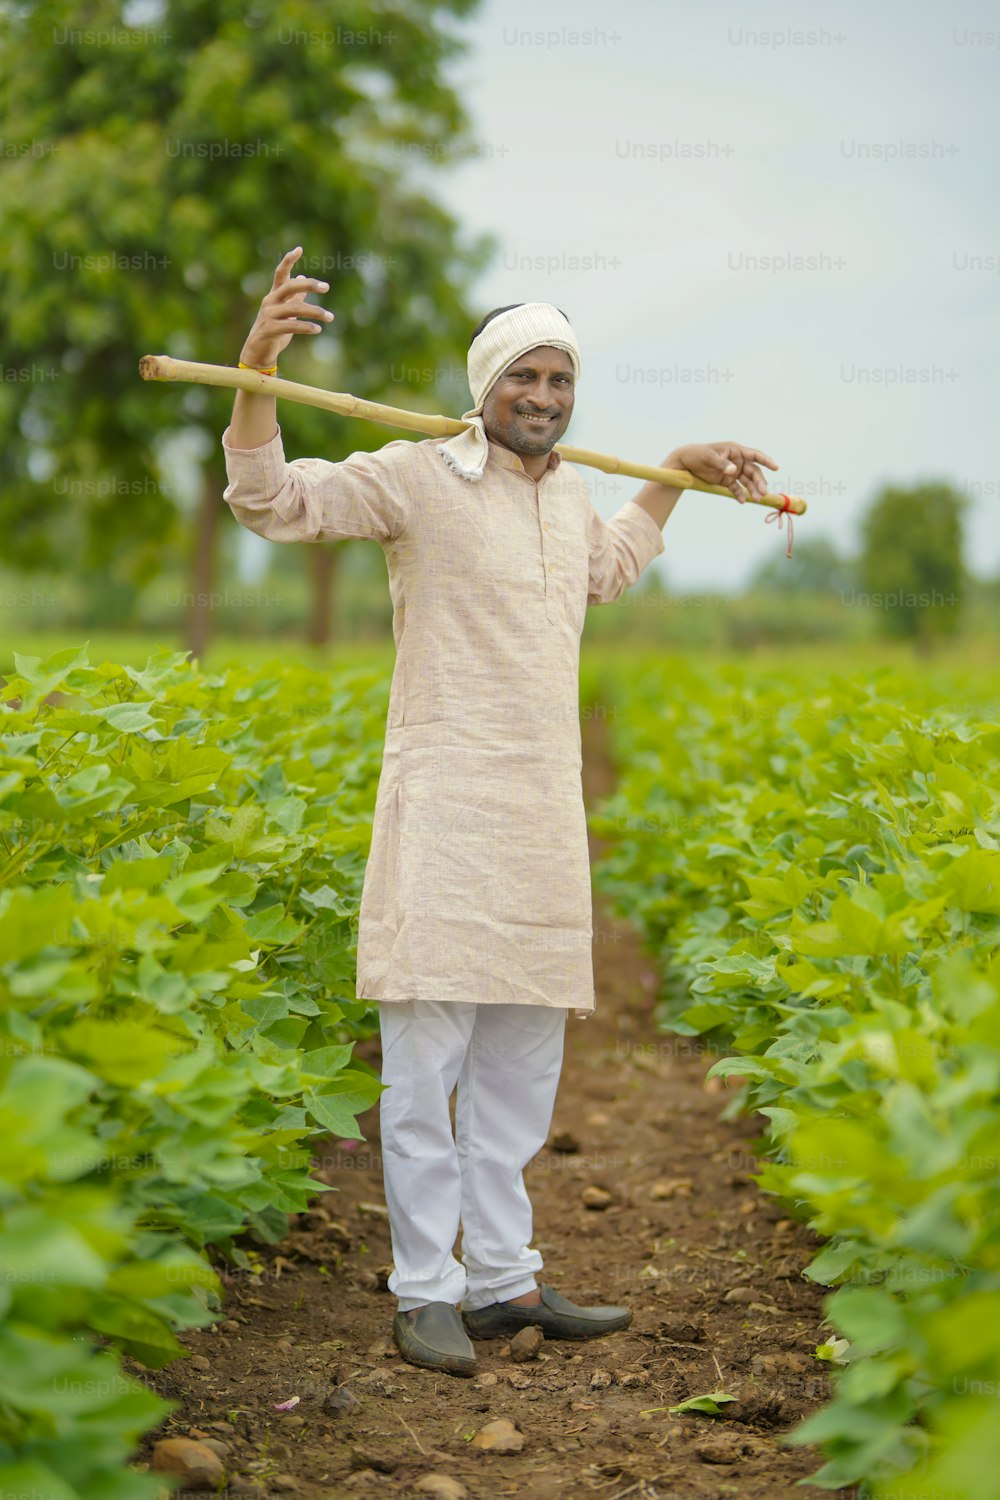 綿花農業の畑に立つ若いインドの農民。